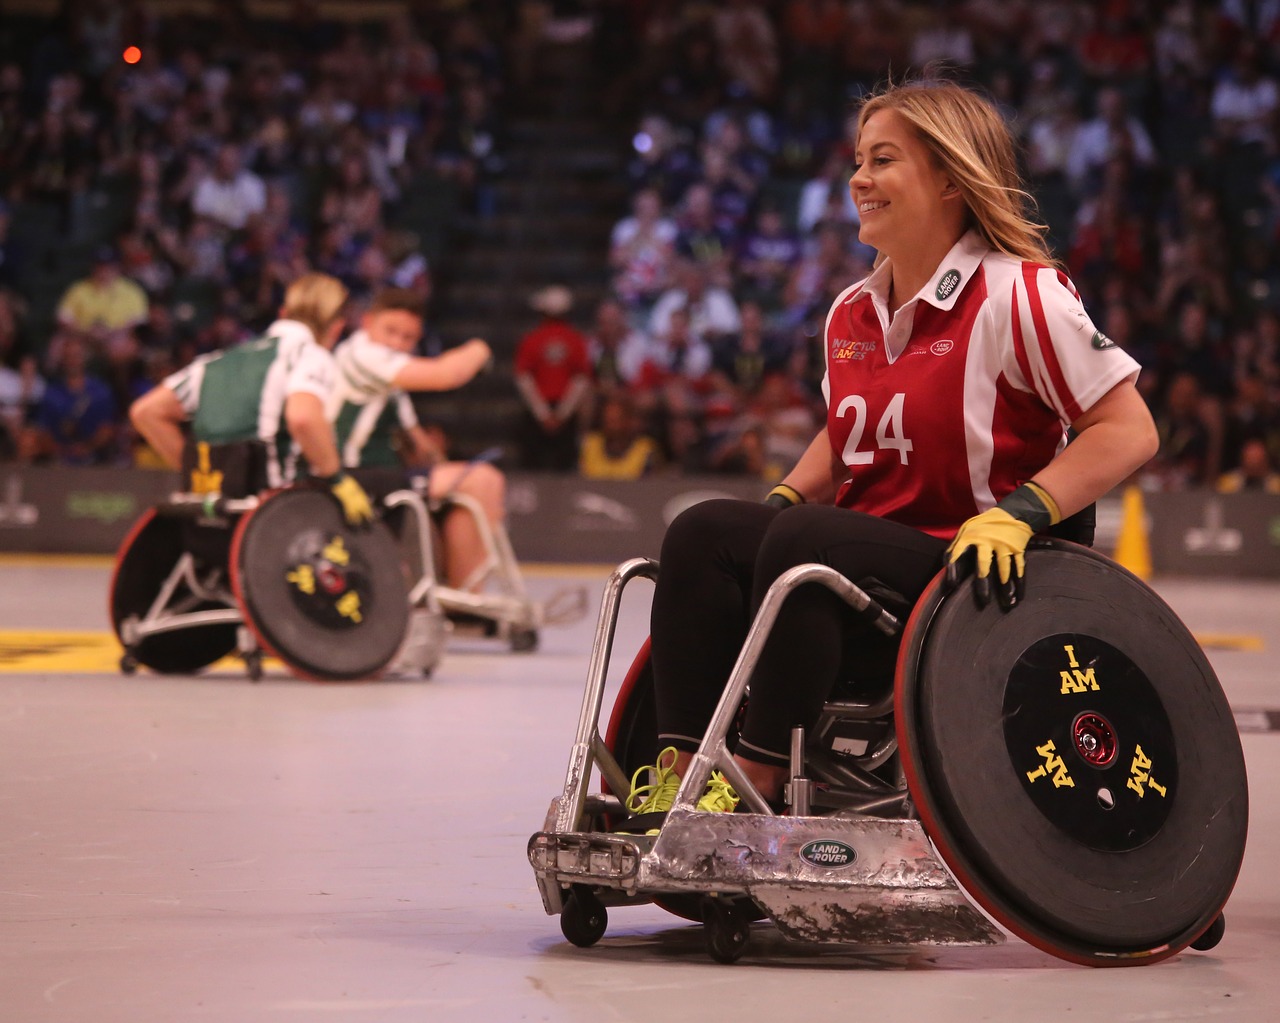 2)	Penser au sport pour des personnes handicapées. 